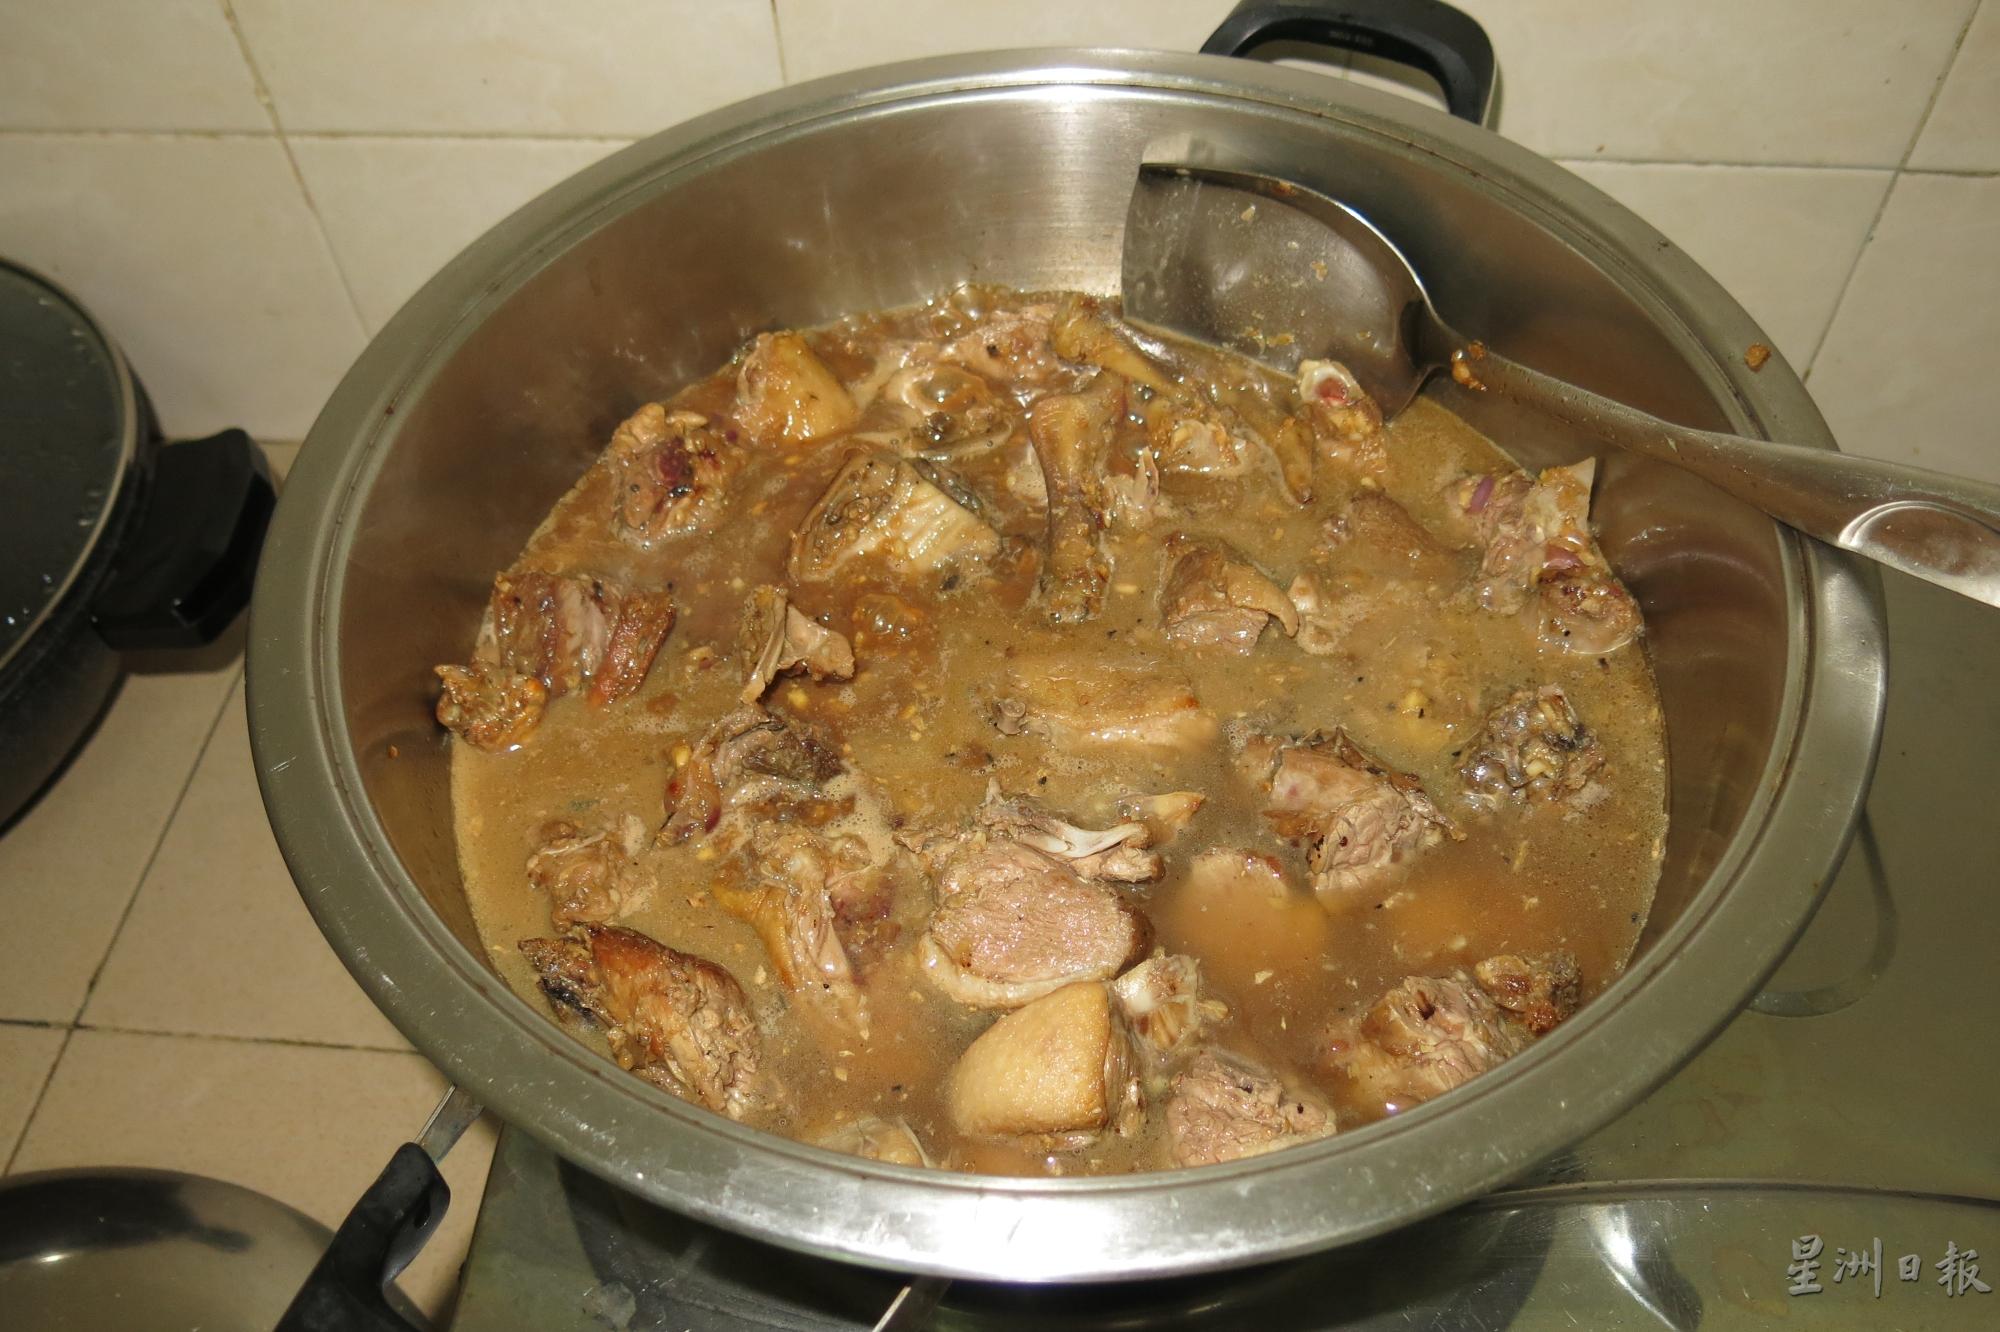 爆炒过的鸭肉也可以放入另一个焖锅中，并加入淹过鸭肉的水。

